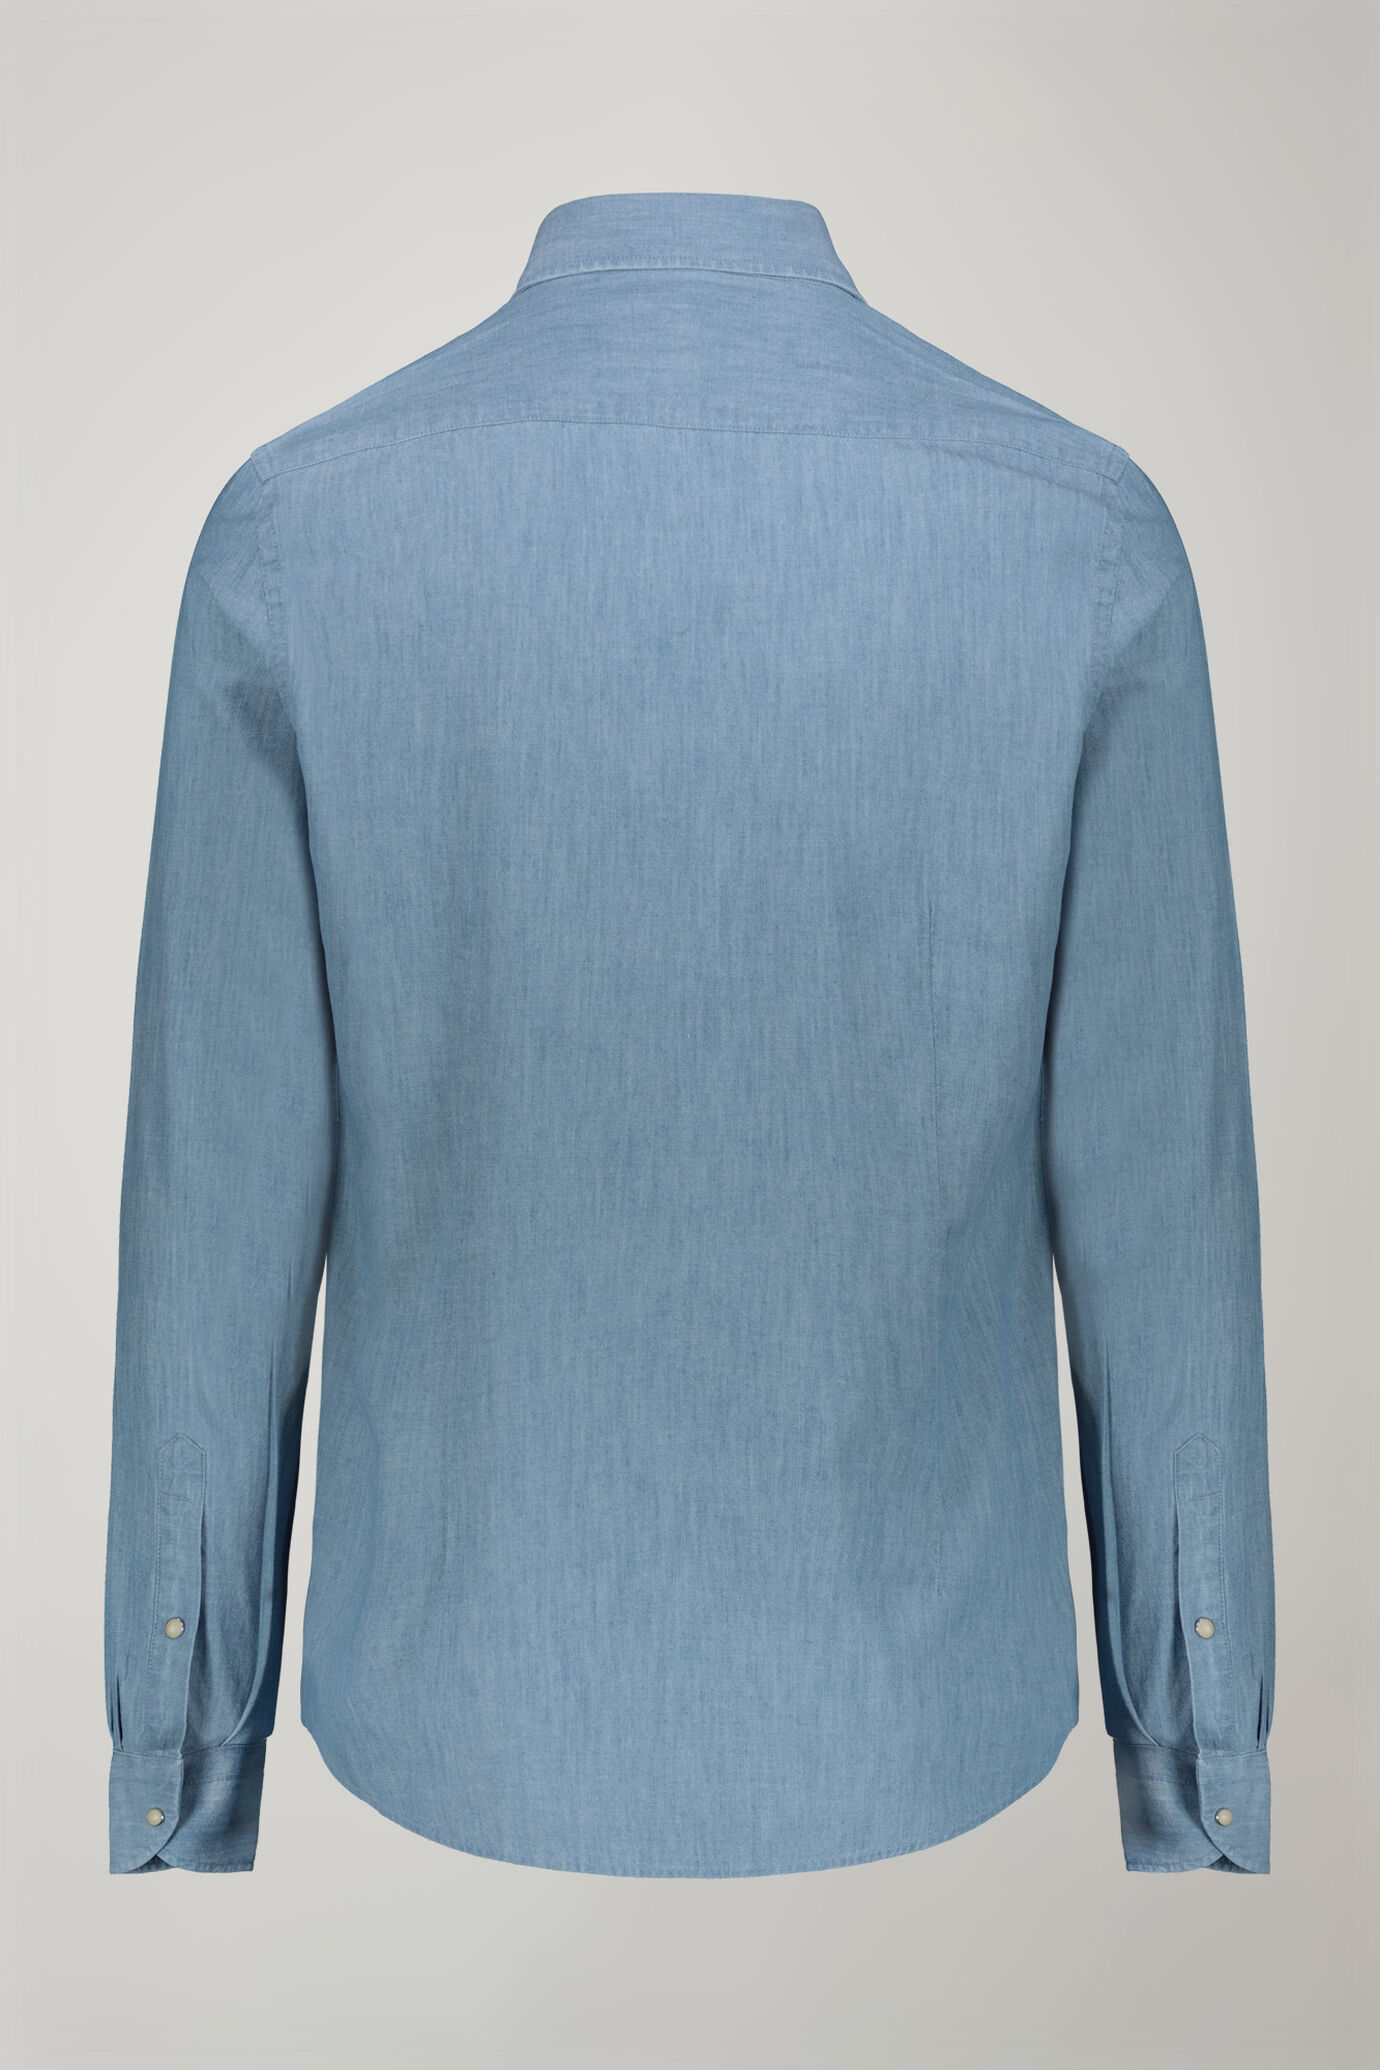 Herren-Freizeithemd mit klassischem Kragen aus 100 % Baumwolle in hellem Chambray-Stoff in bequemer Passform image number 6